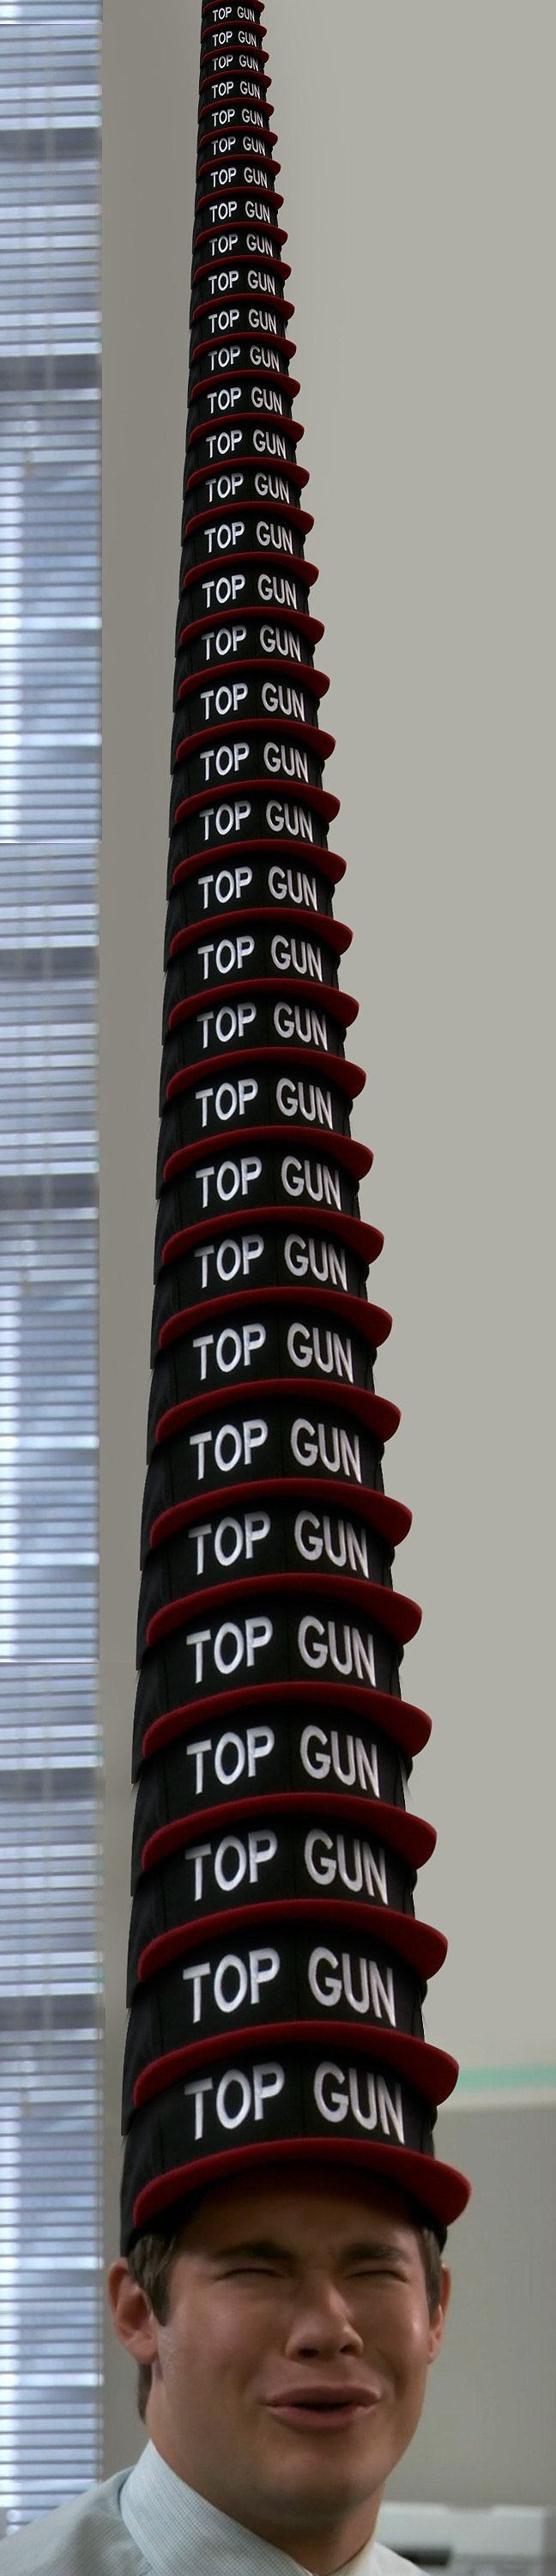 Obrázek -xTop Gun-      23.09.2012